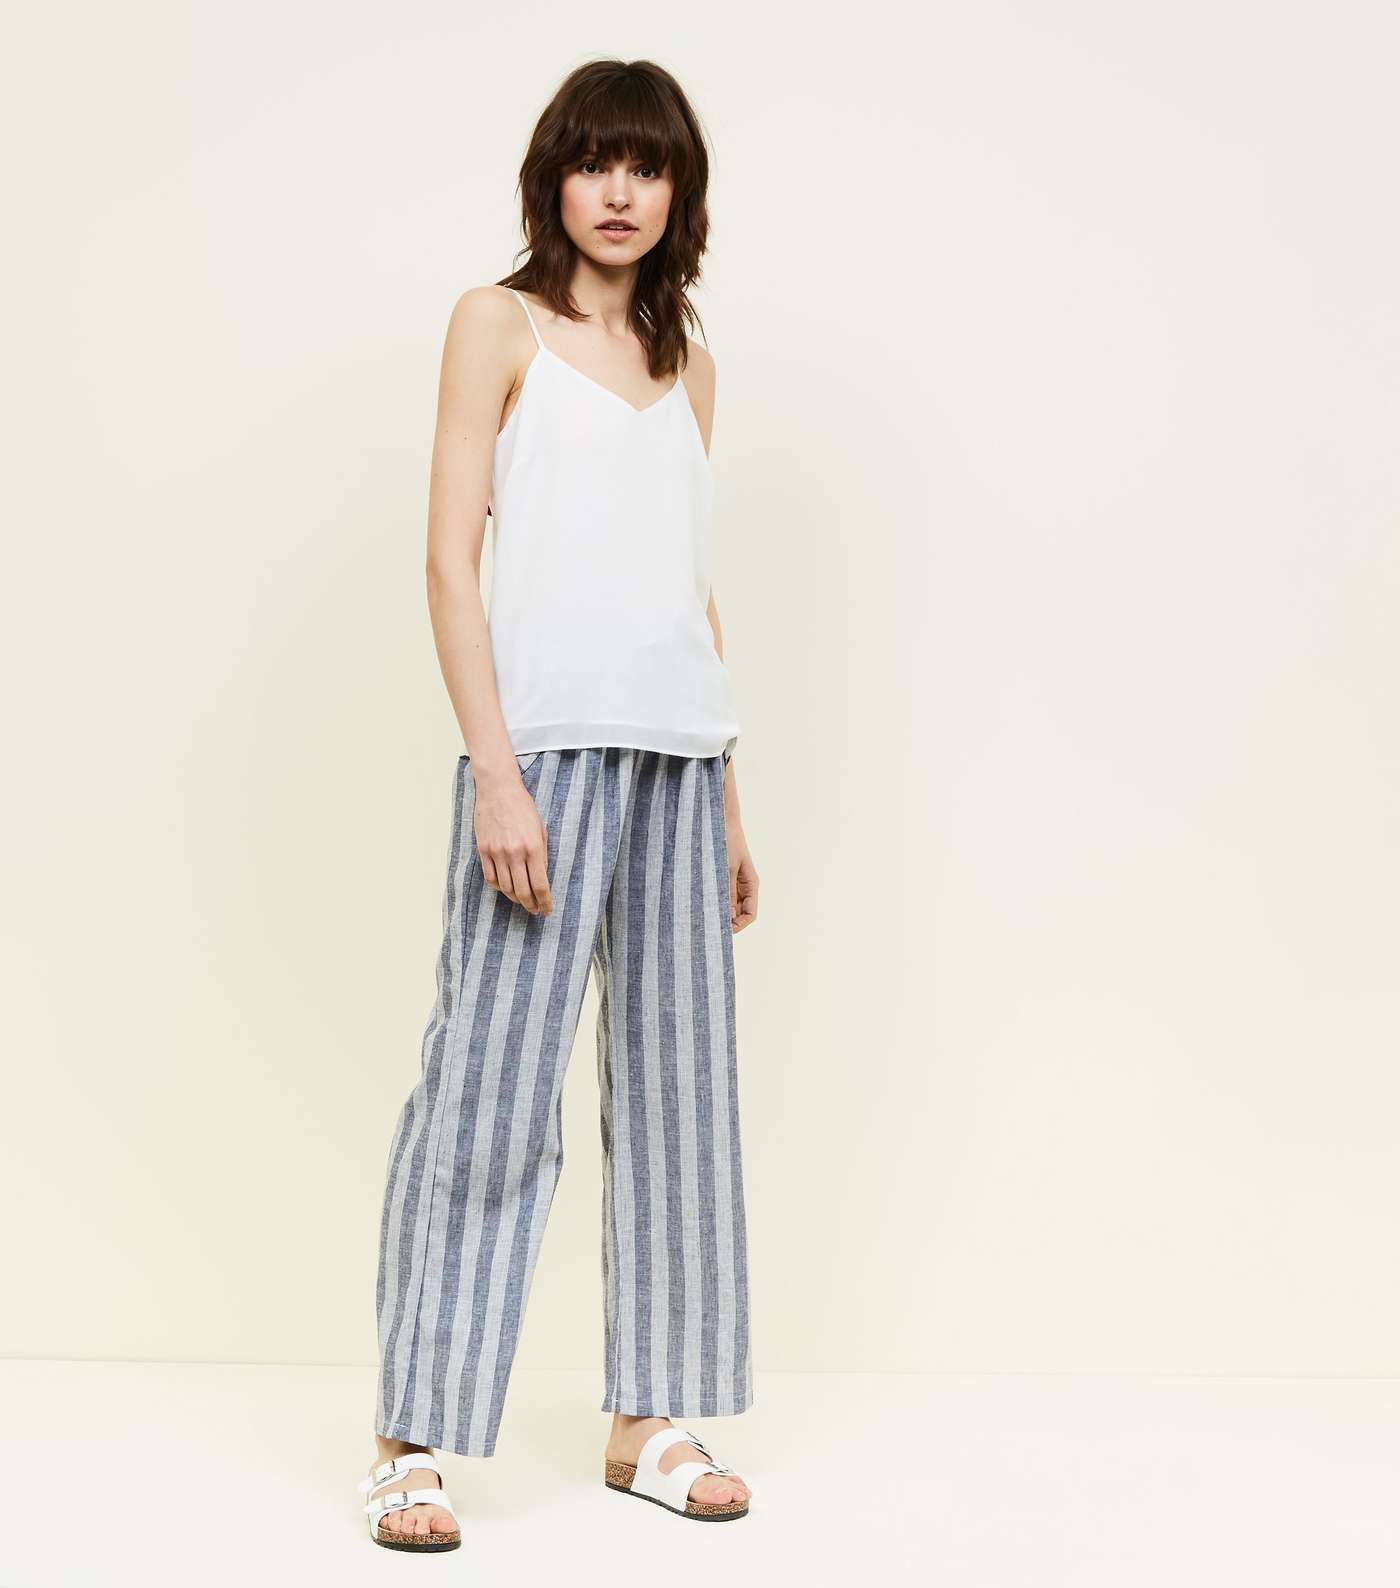 Lulua London Blue Stripe Linen-Look Trousers 